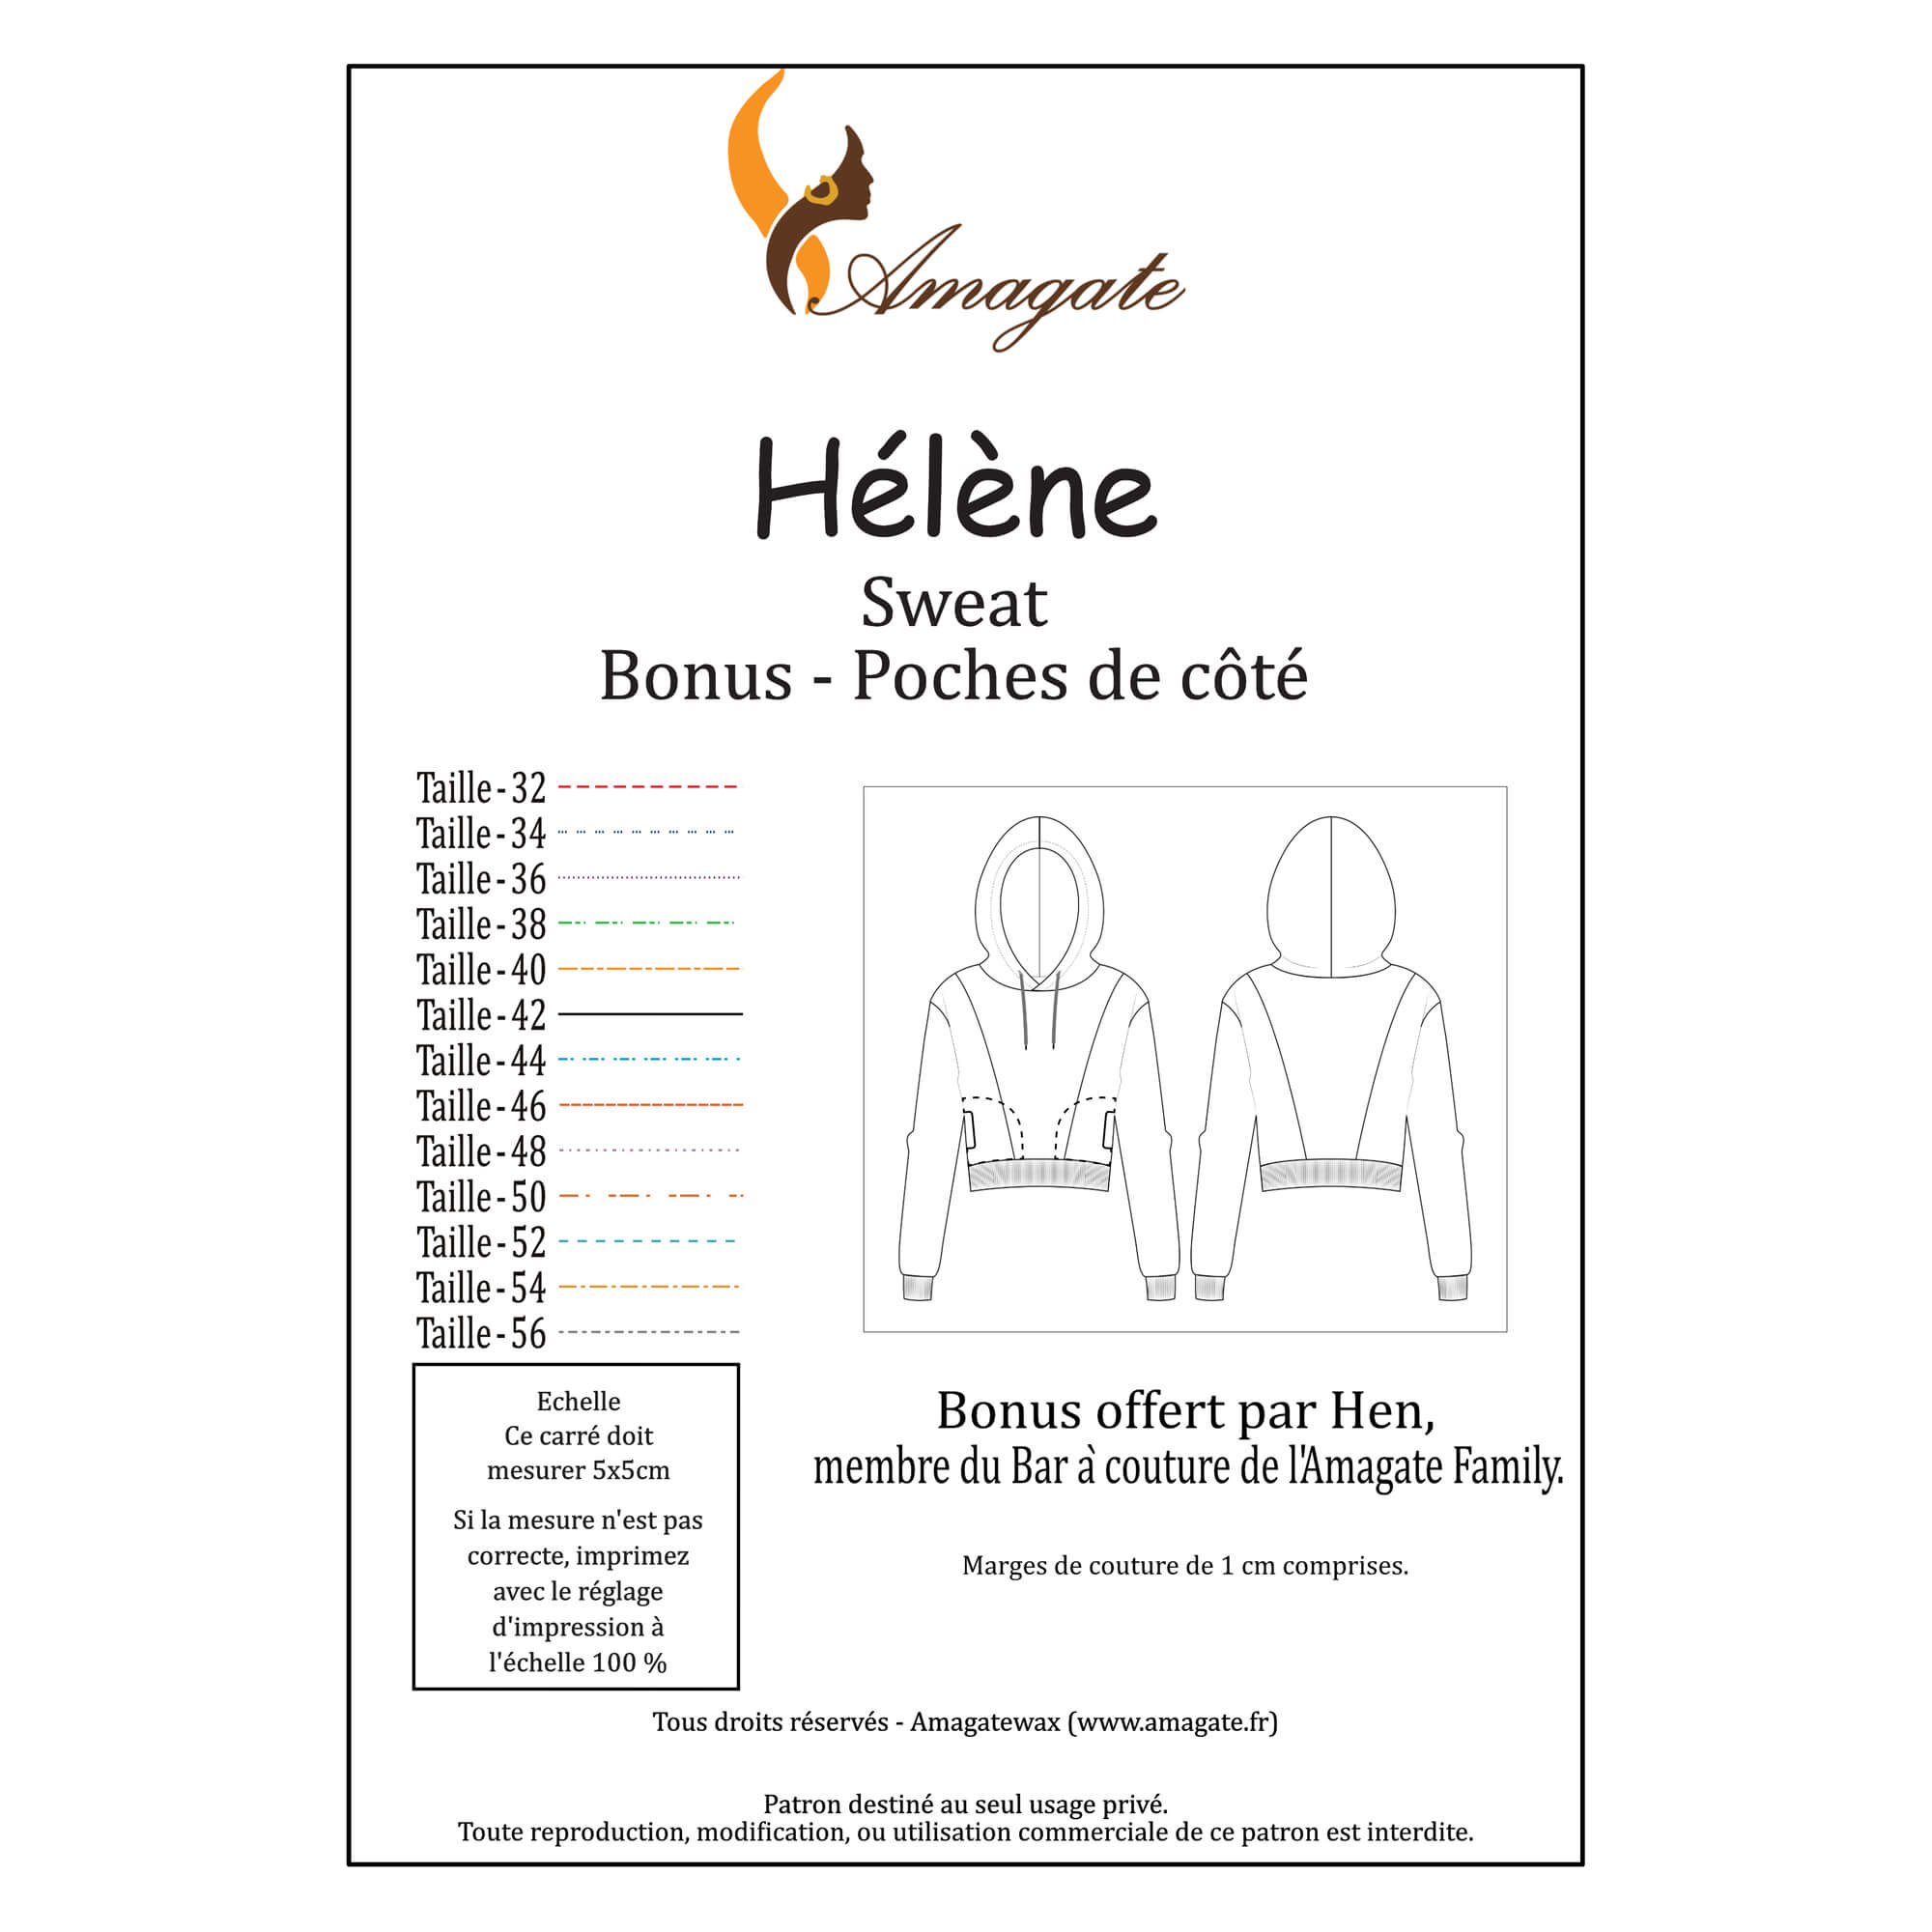 Hélène - Sweat - Taille 32 à 56 - Bonus - Poches de côté - PDF